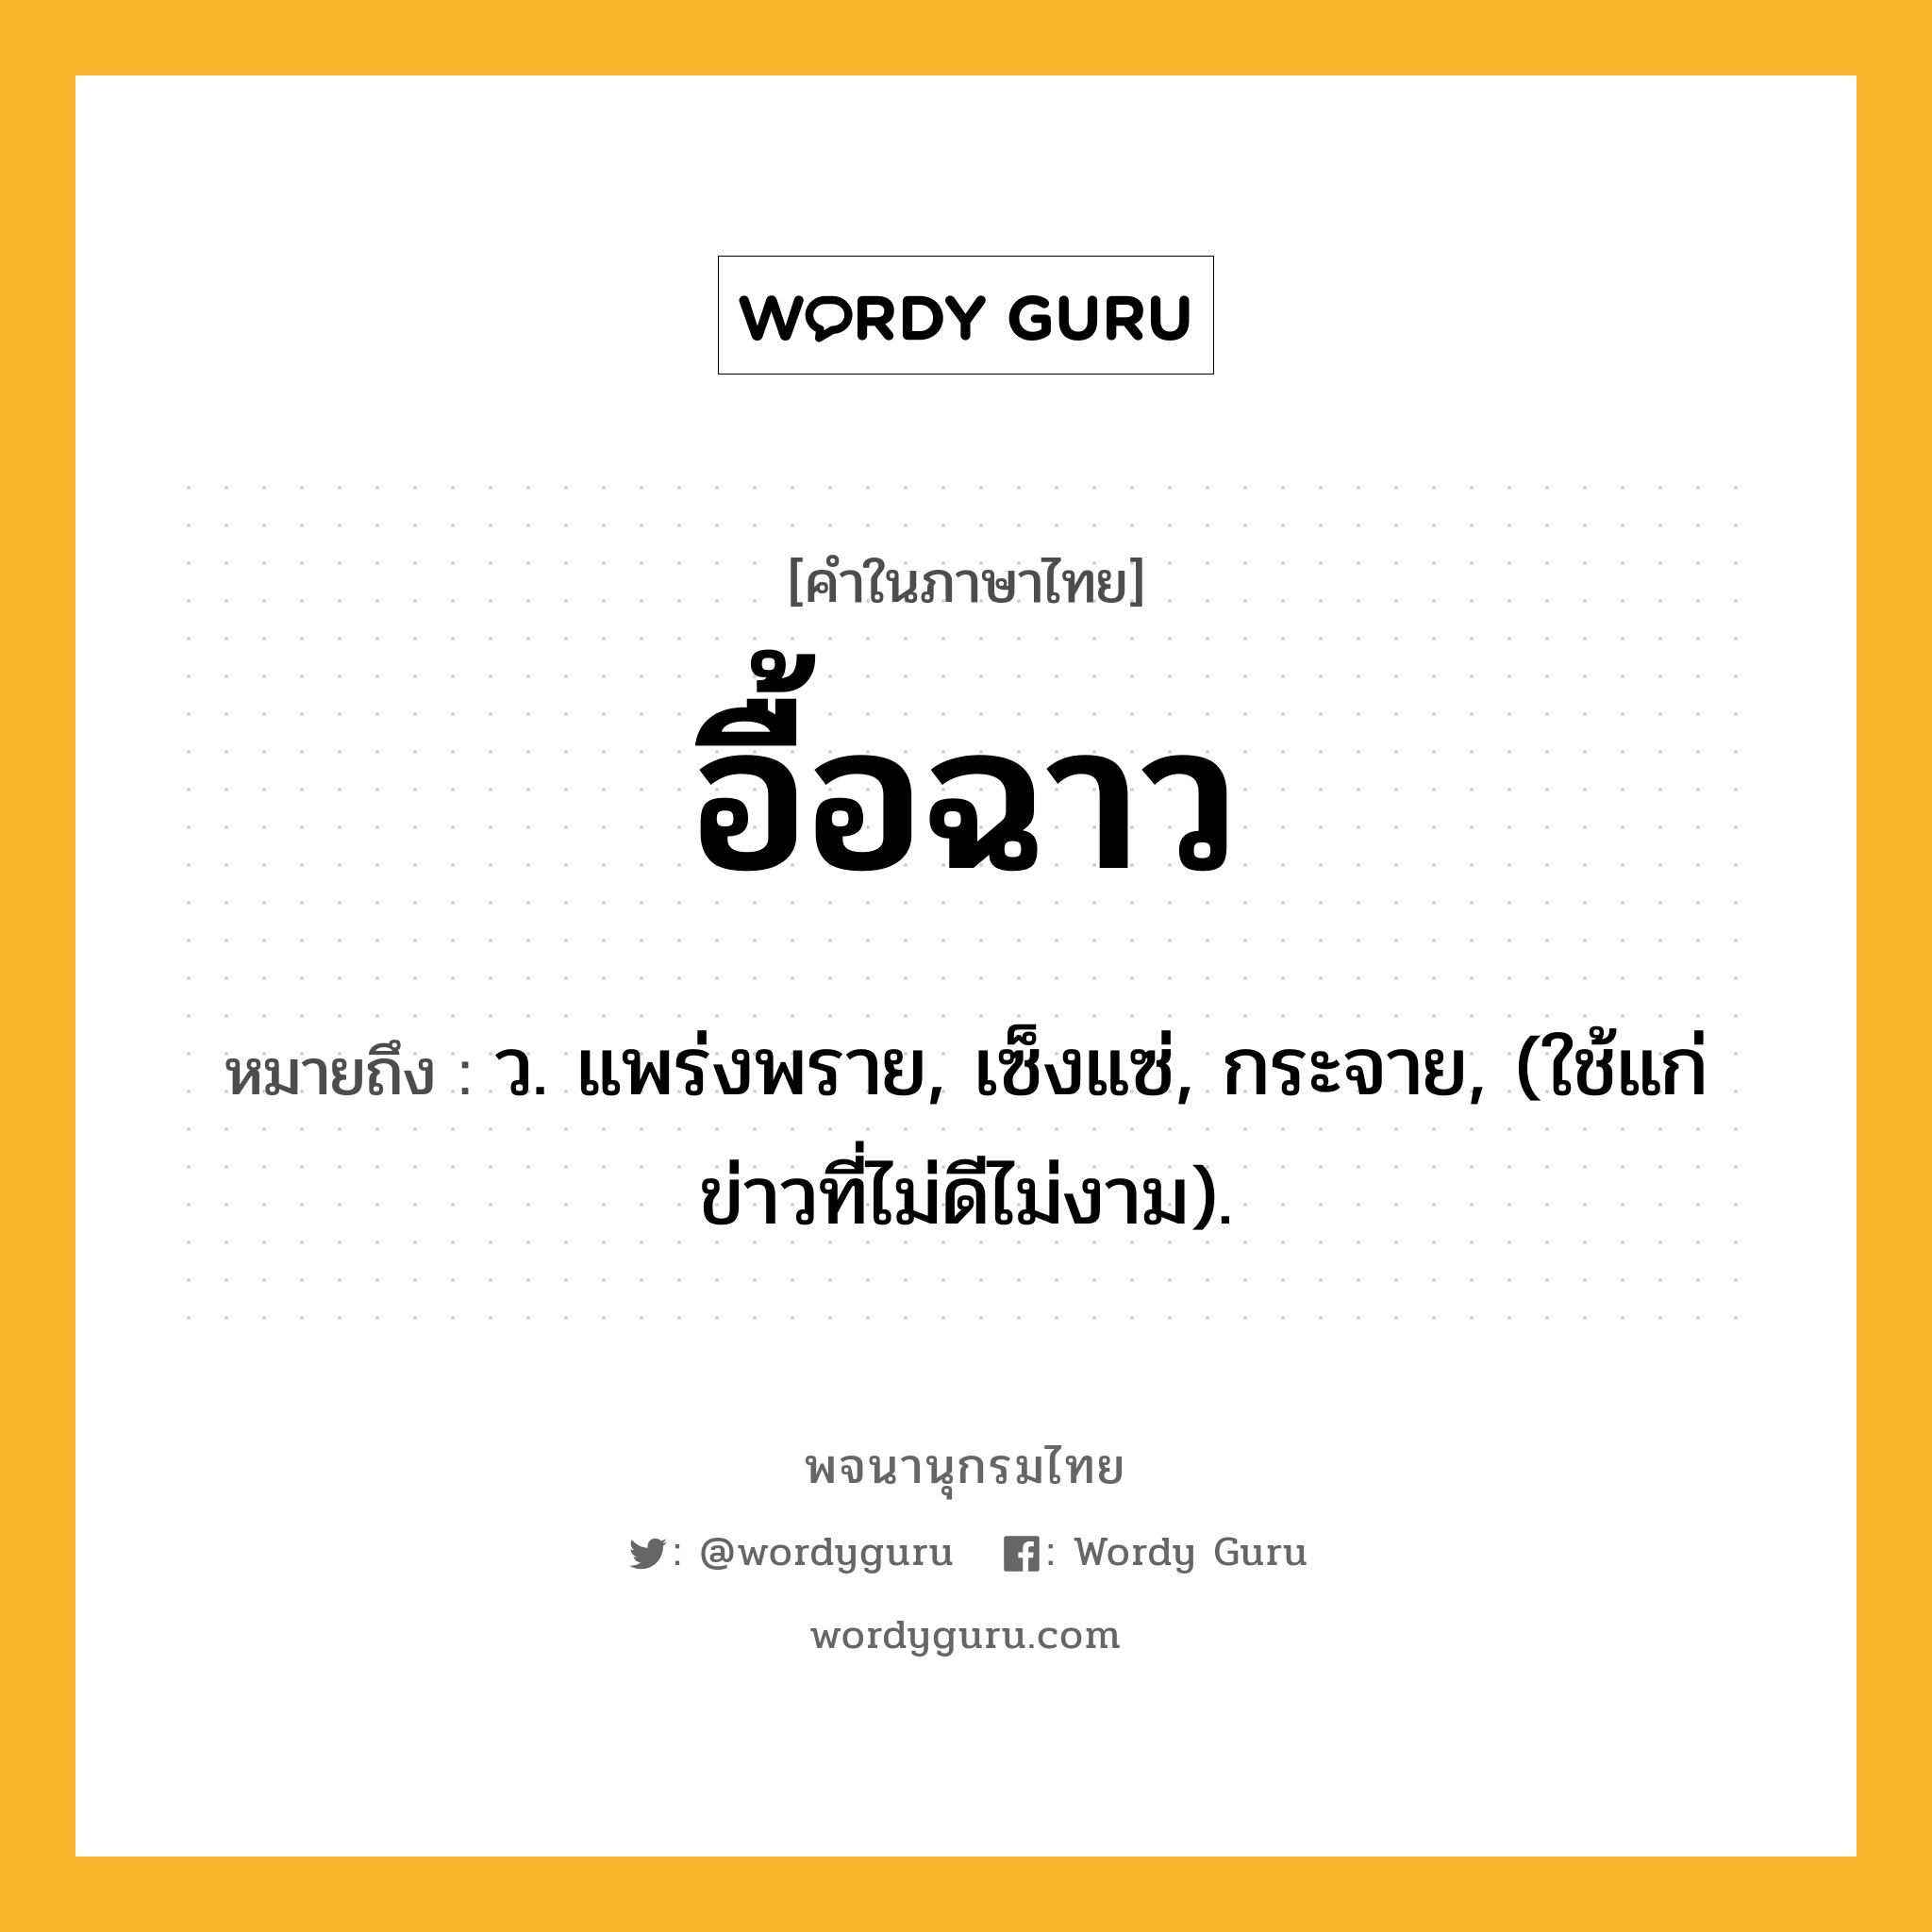 อื้อฉาว ความหมาย หมายถึงอะไร?, คำในภาษาไทย อื้อฉาว หมายถึง ว. แพร่งพราย, เซ็งแซ่, กระจาย, (ใช้แก่ข่าวที่ไม่ดีไม่งาม).